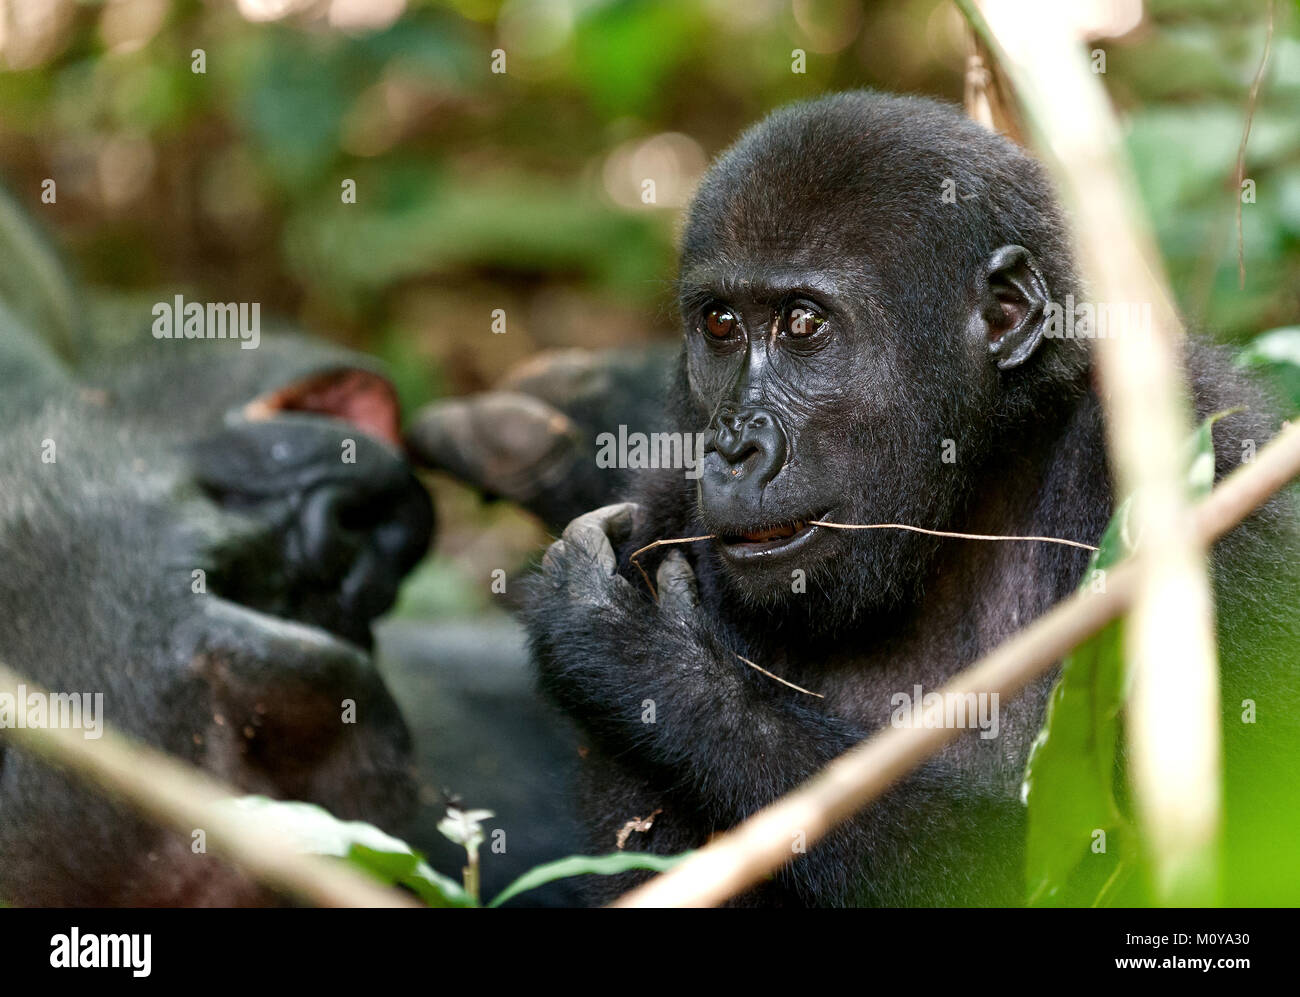 Gorilla in Congo, western pianura gorilla nella giungla del Congo. Ritratto di una pianura occidentale (gorilla Gorilla gorilla gorilla) chiudere fino a breve distanc Foto Stock